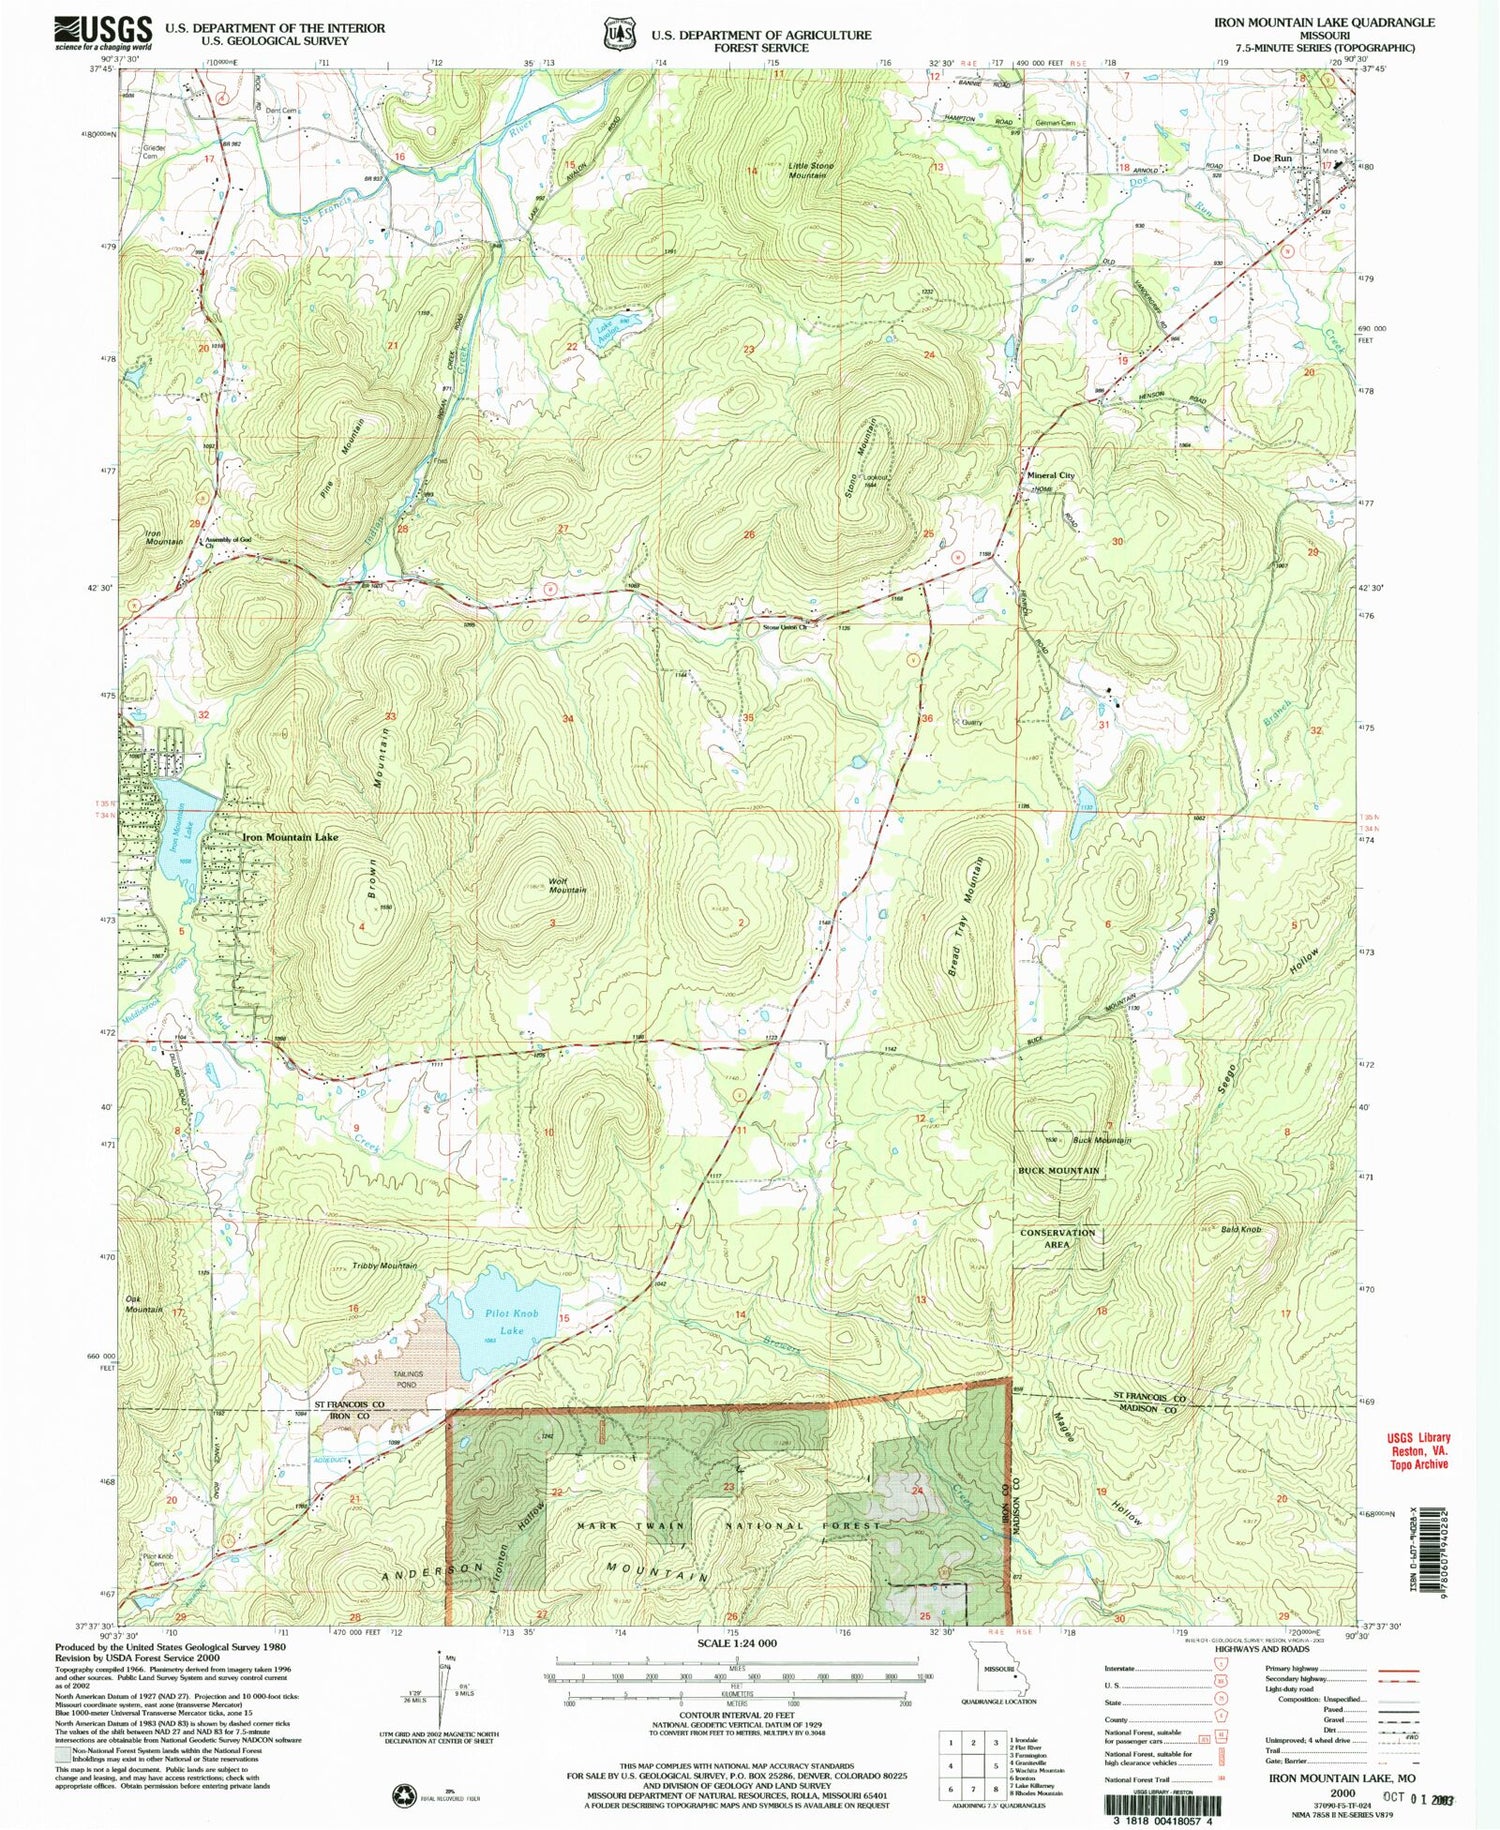 Classic USGS Iron Mountain Lake Missouri 7.5'x7.5' Topo Map Image